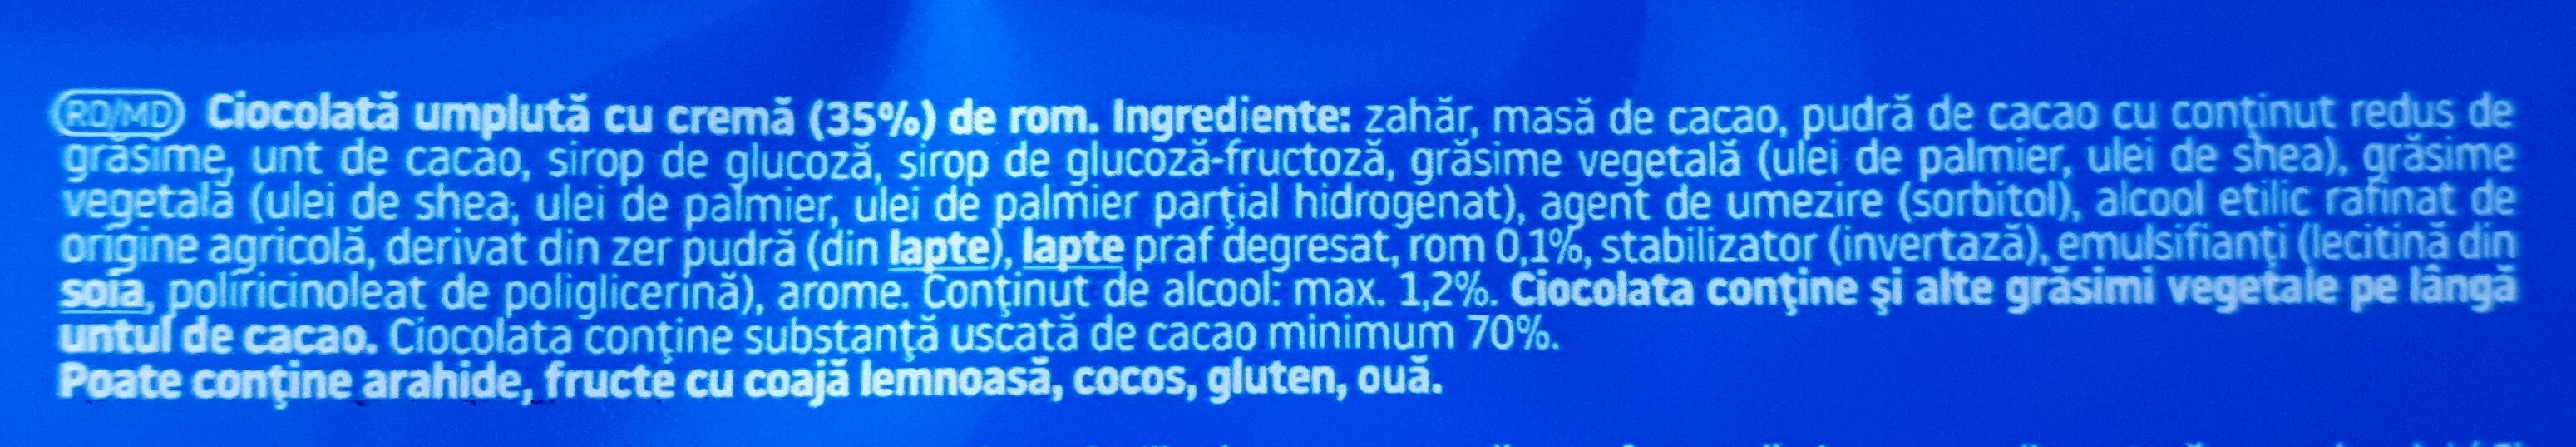 Autentic Rom - Ciocolată amăruie 70% cacao şi cremă rom - Ingrediënten - ro